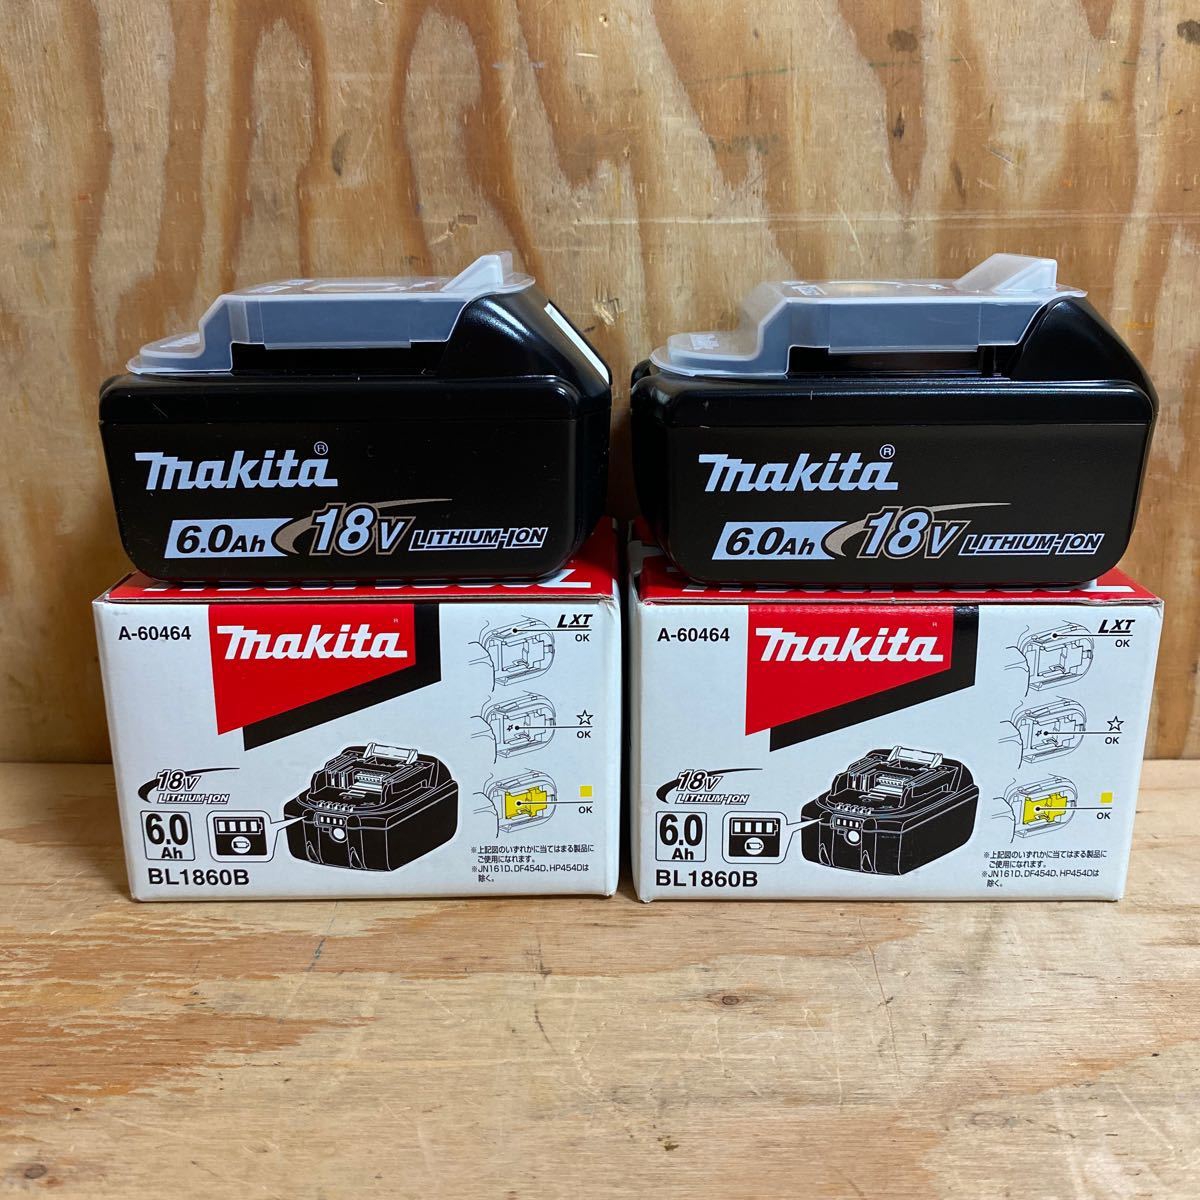 マキタ makita 18V(6.0Ah)リチウムイオンバッテリー BL1860B の高価買取なら、電動工具の買取屋 買取の匠 福山店にお任せ